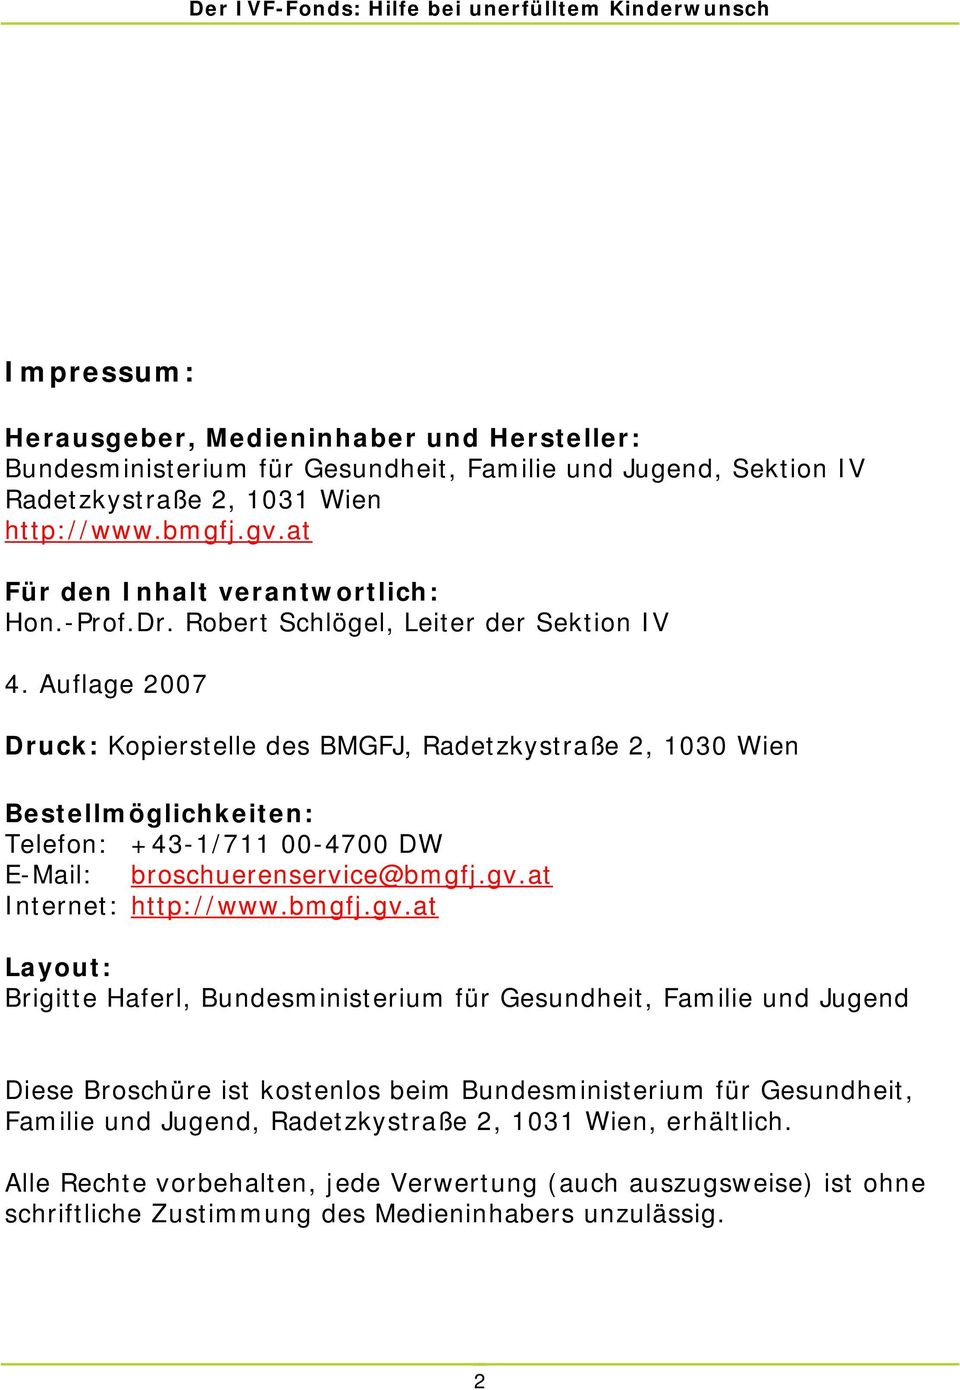 Auflage 2007 Druck: Kopierstelle des BMGFJ, Radetzkystraße 2, 1030 Wien Bestellmöglichkeiten: Telefon: +43-1/711 00-4700 DW E-Mail: broschuerenservice@bmgfj.gv.